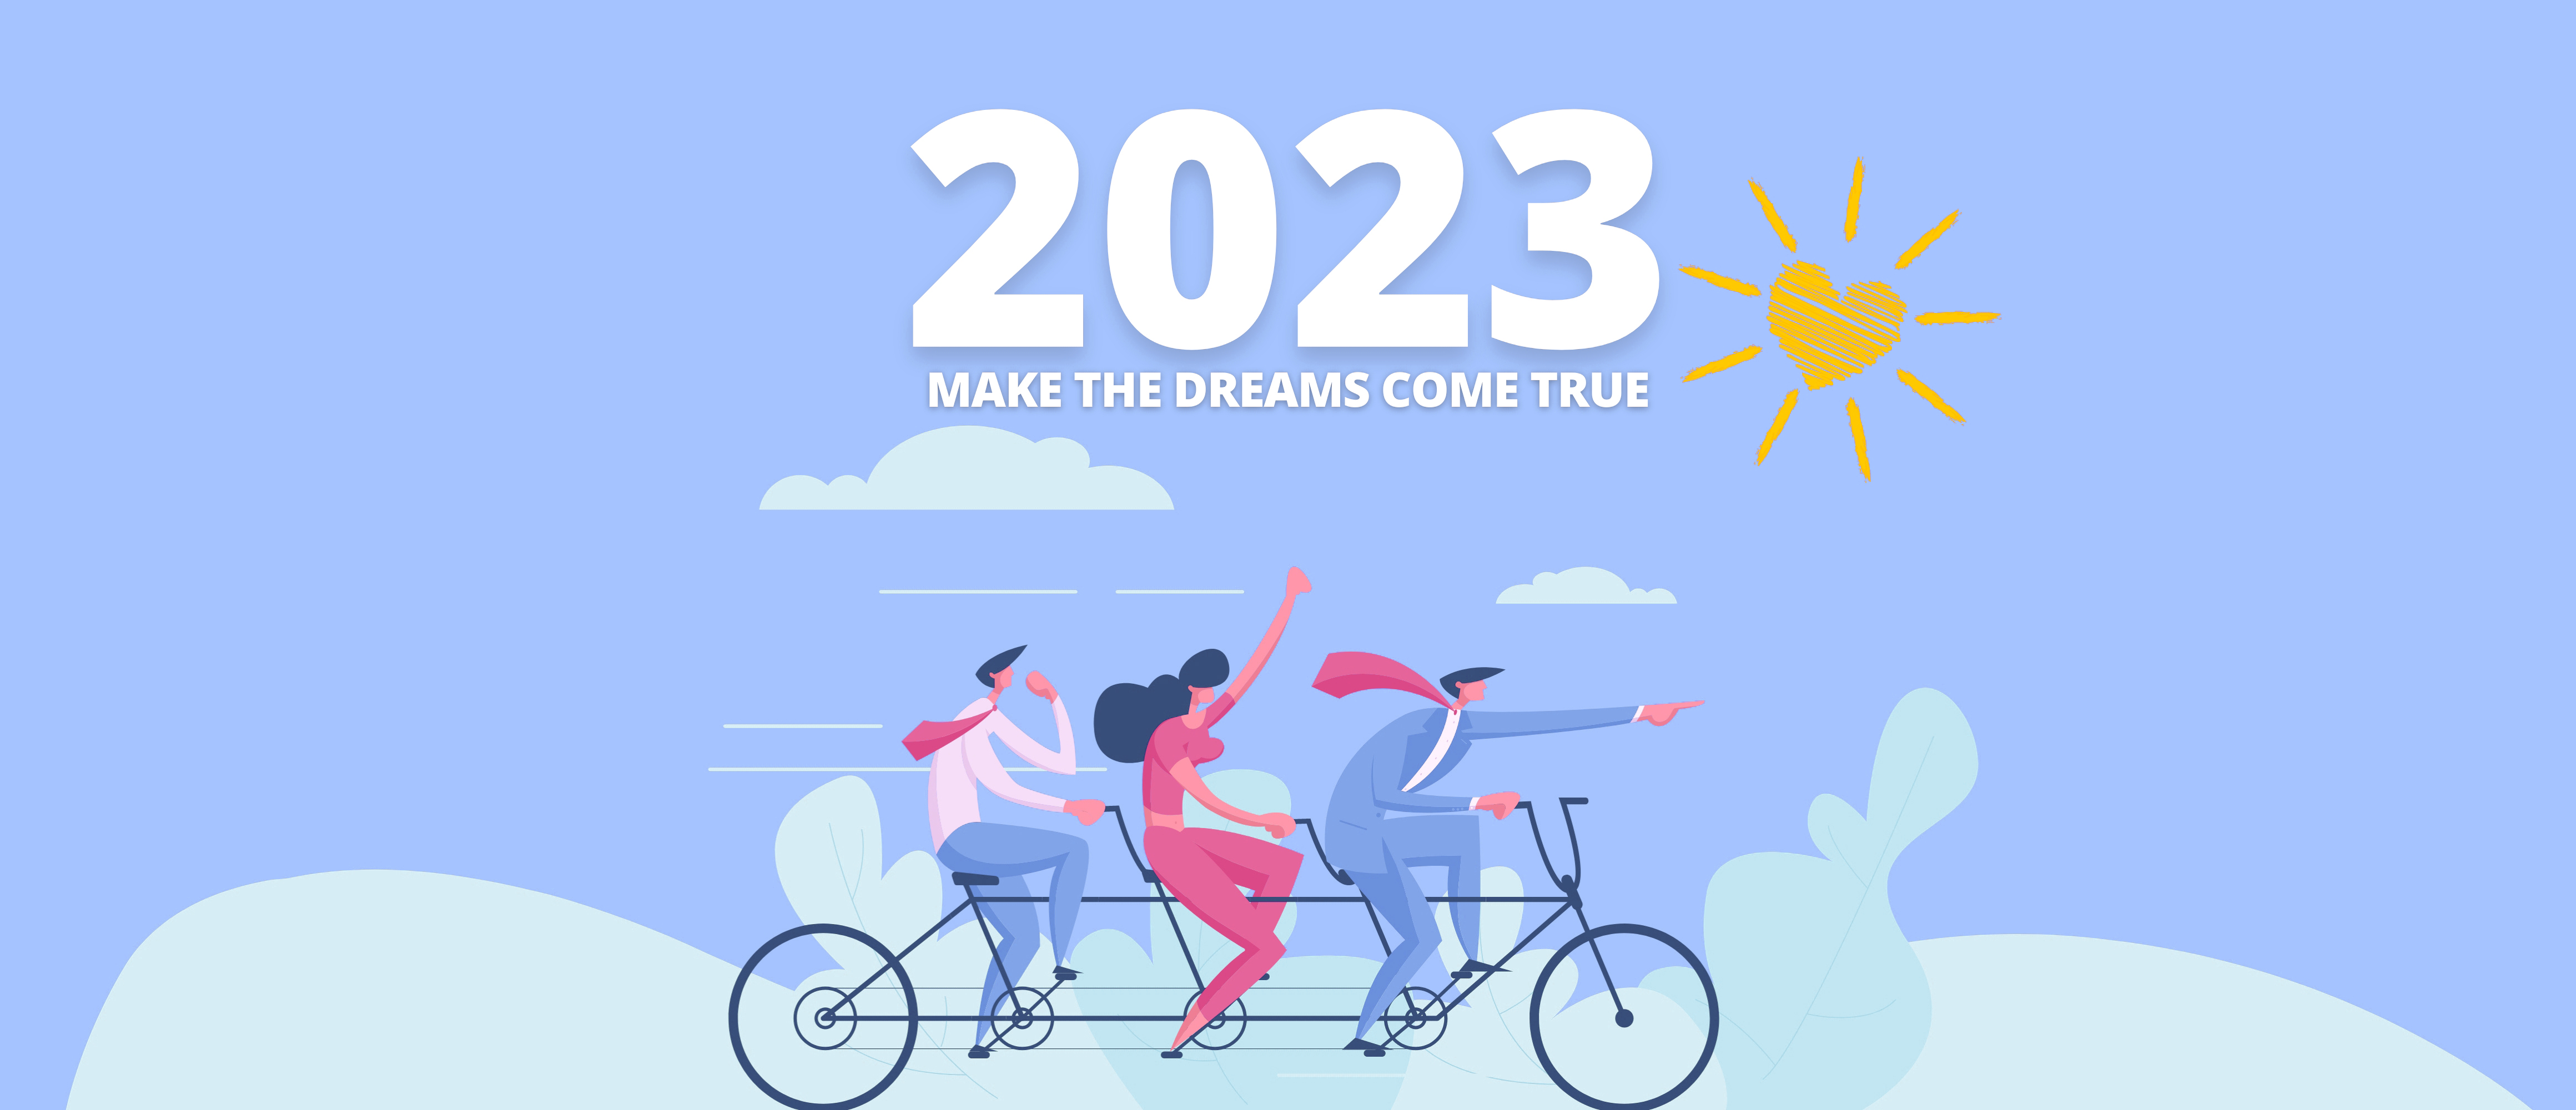 2023 make the dreams come true 